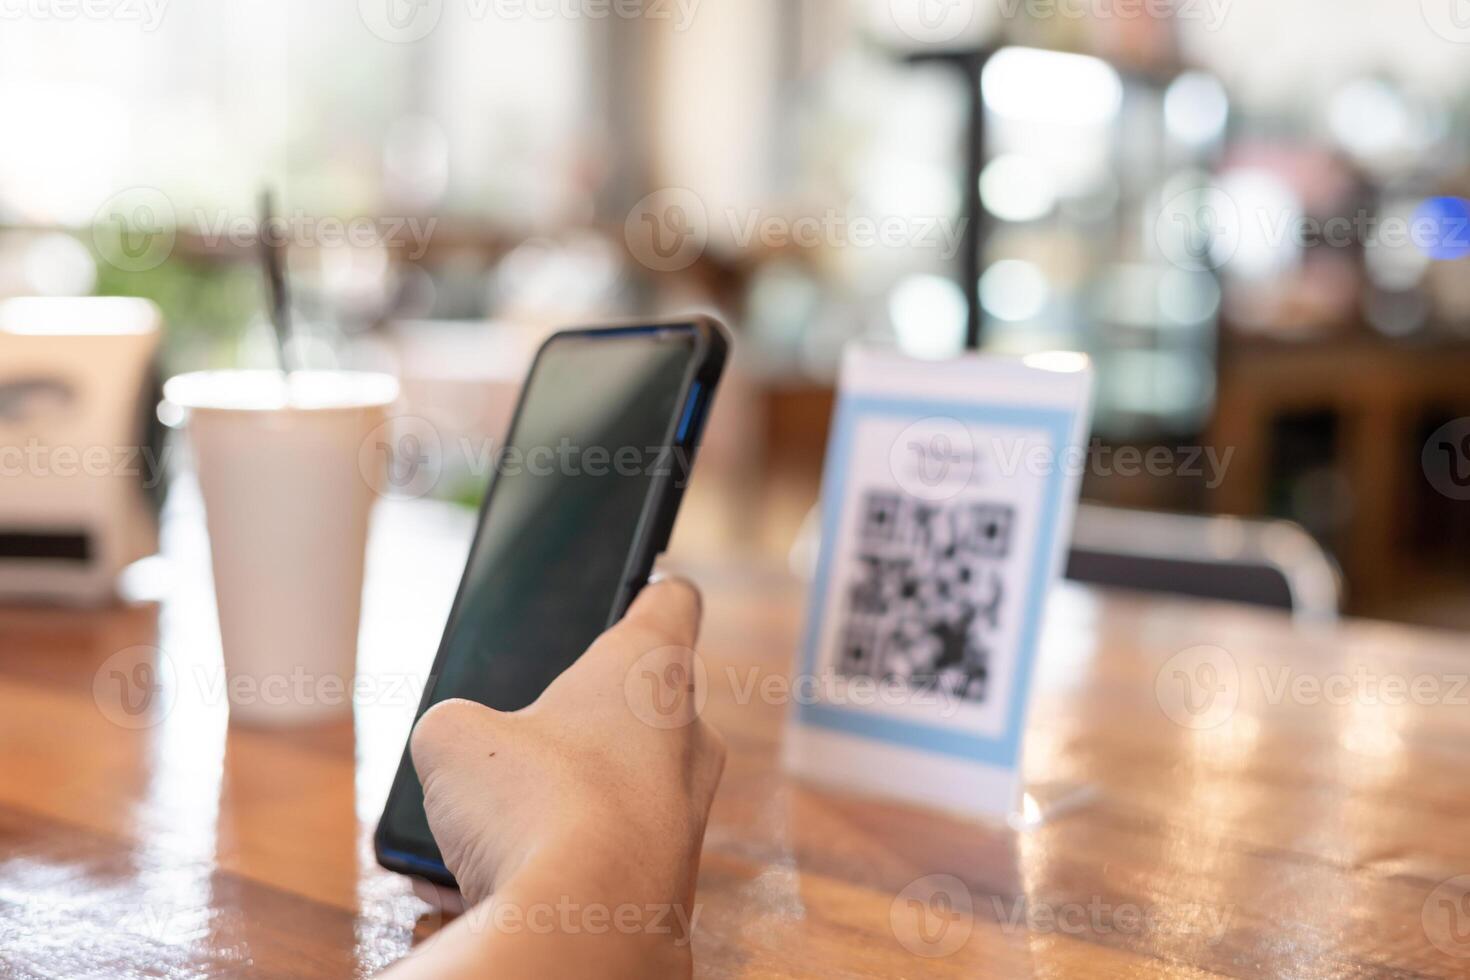 man använda sig av smartphone till skanna qr koda till betala i Kafé restaurang med en digital betalning utan kontanter. välja meny och beställa ackumulera rabatt. e plånbok, teknologi, betala uppkopplad, kreditera kort, Bank app. foto